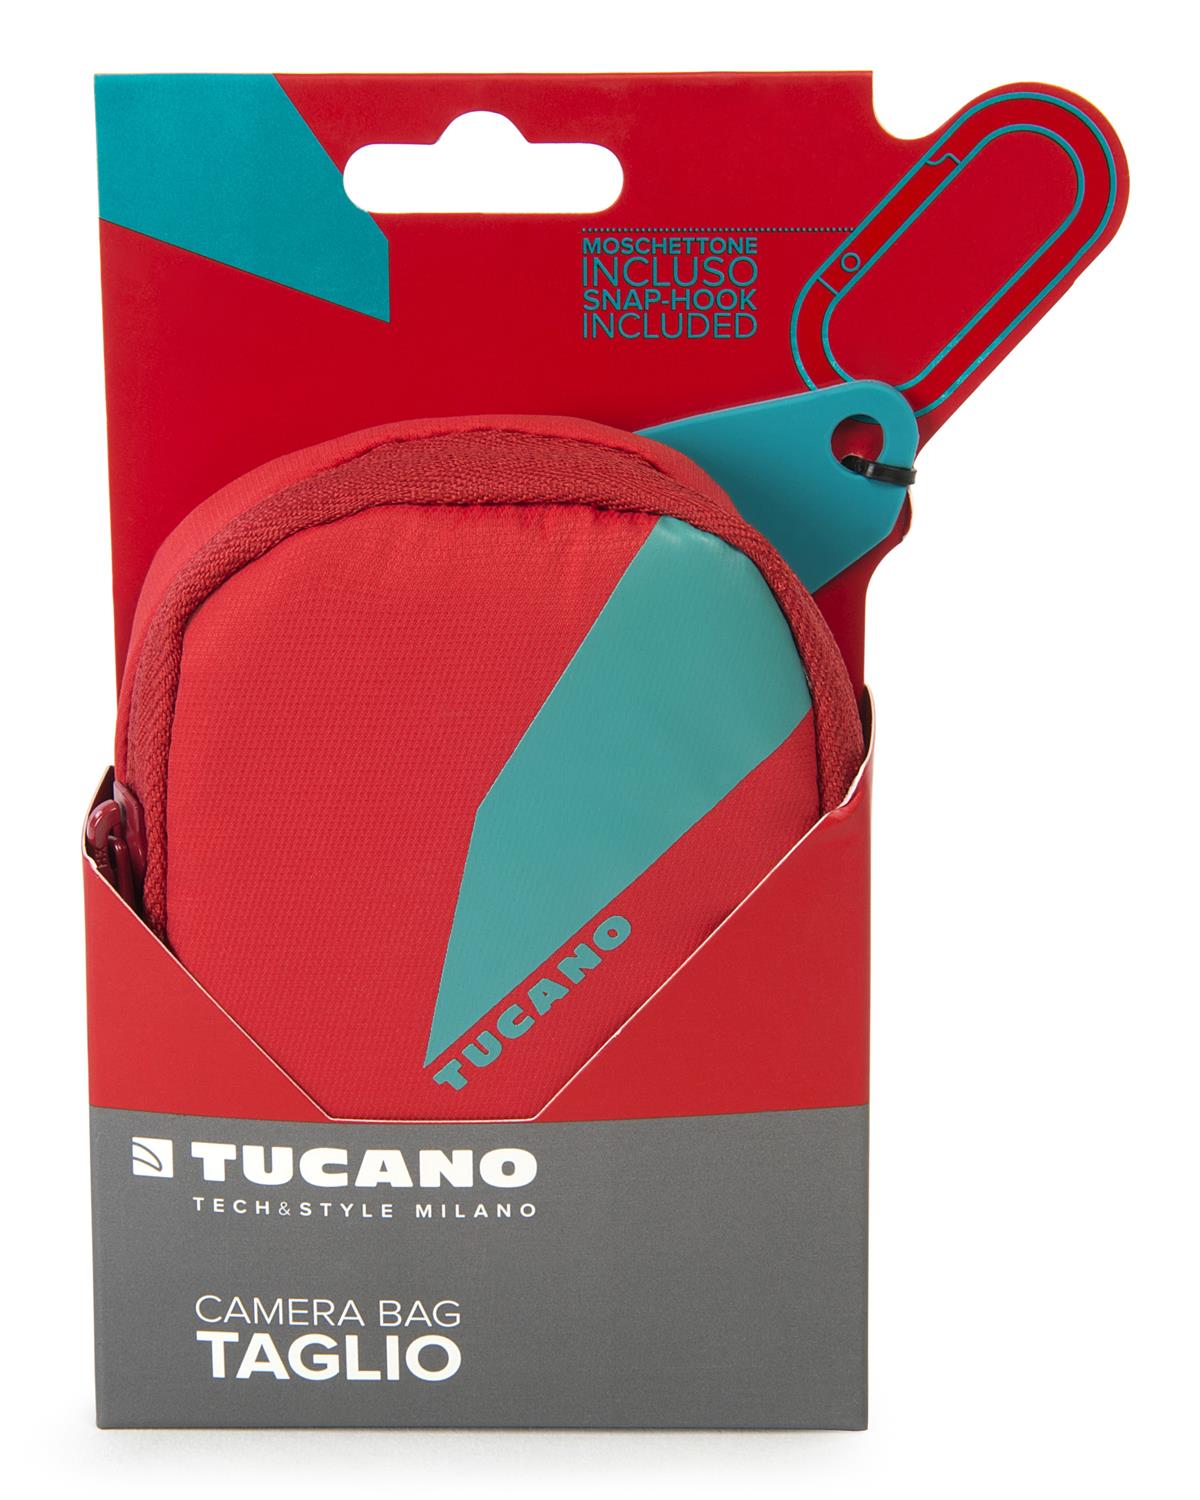 Tucano Taglio Tragetasche für Kompaktkameras, rot